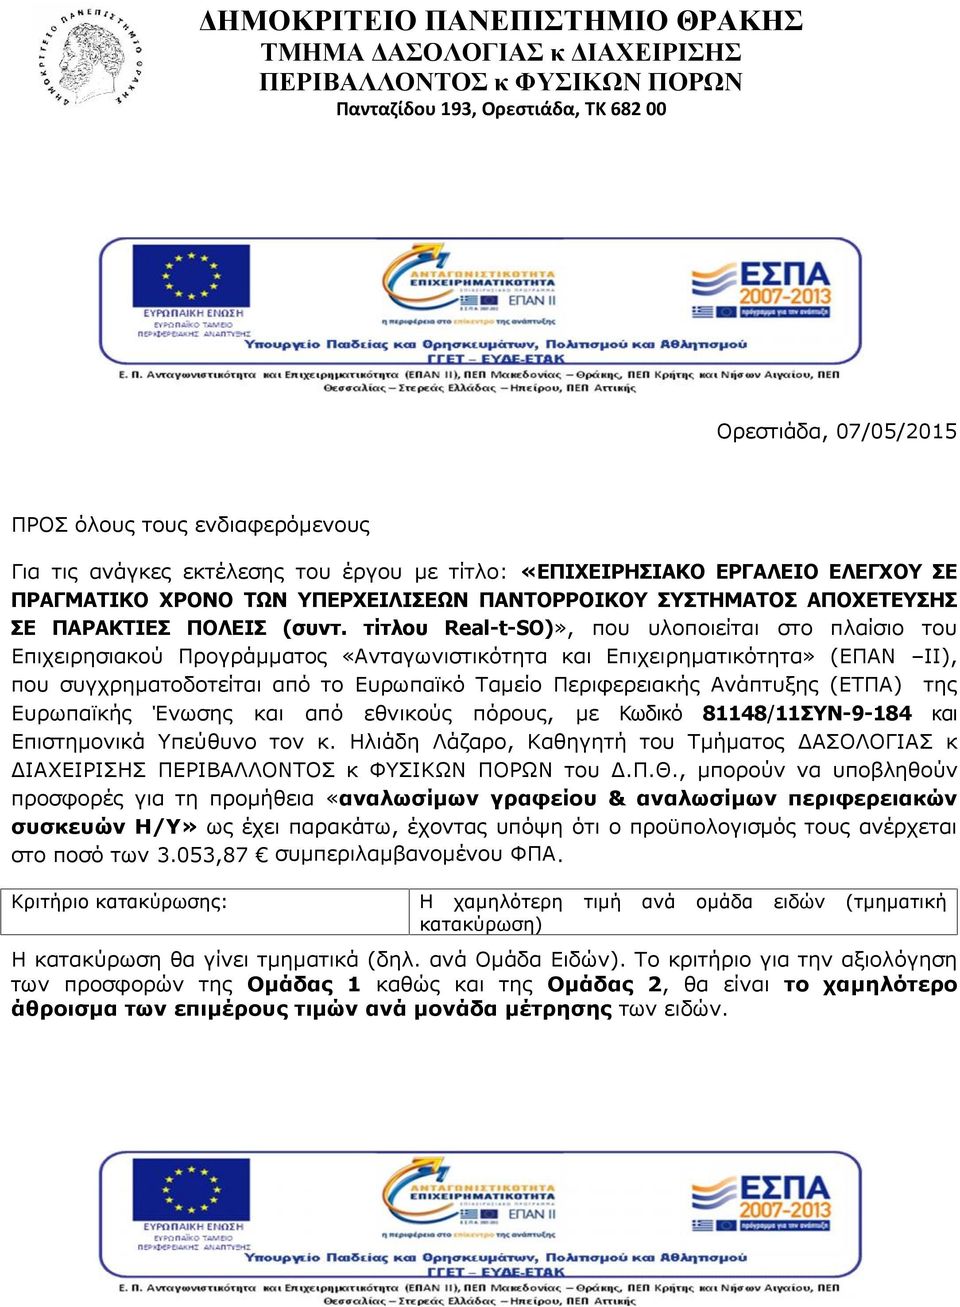 τίτλου Real -t-so)», που υλοποιείται στο πλαίσιο του Επιχειρησιακού Προγράμματος «Ανταγωνιστικότητα και Επιχειρηματικότητα» (ΕΠΑΝ ΙΙ), που συγχρηματοδοτείται από το Ευρωπαϊκό Ταμείο Περιφερειακής